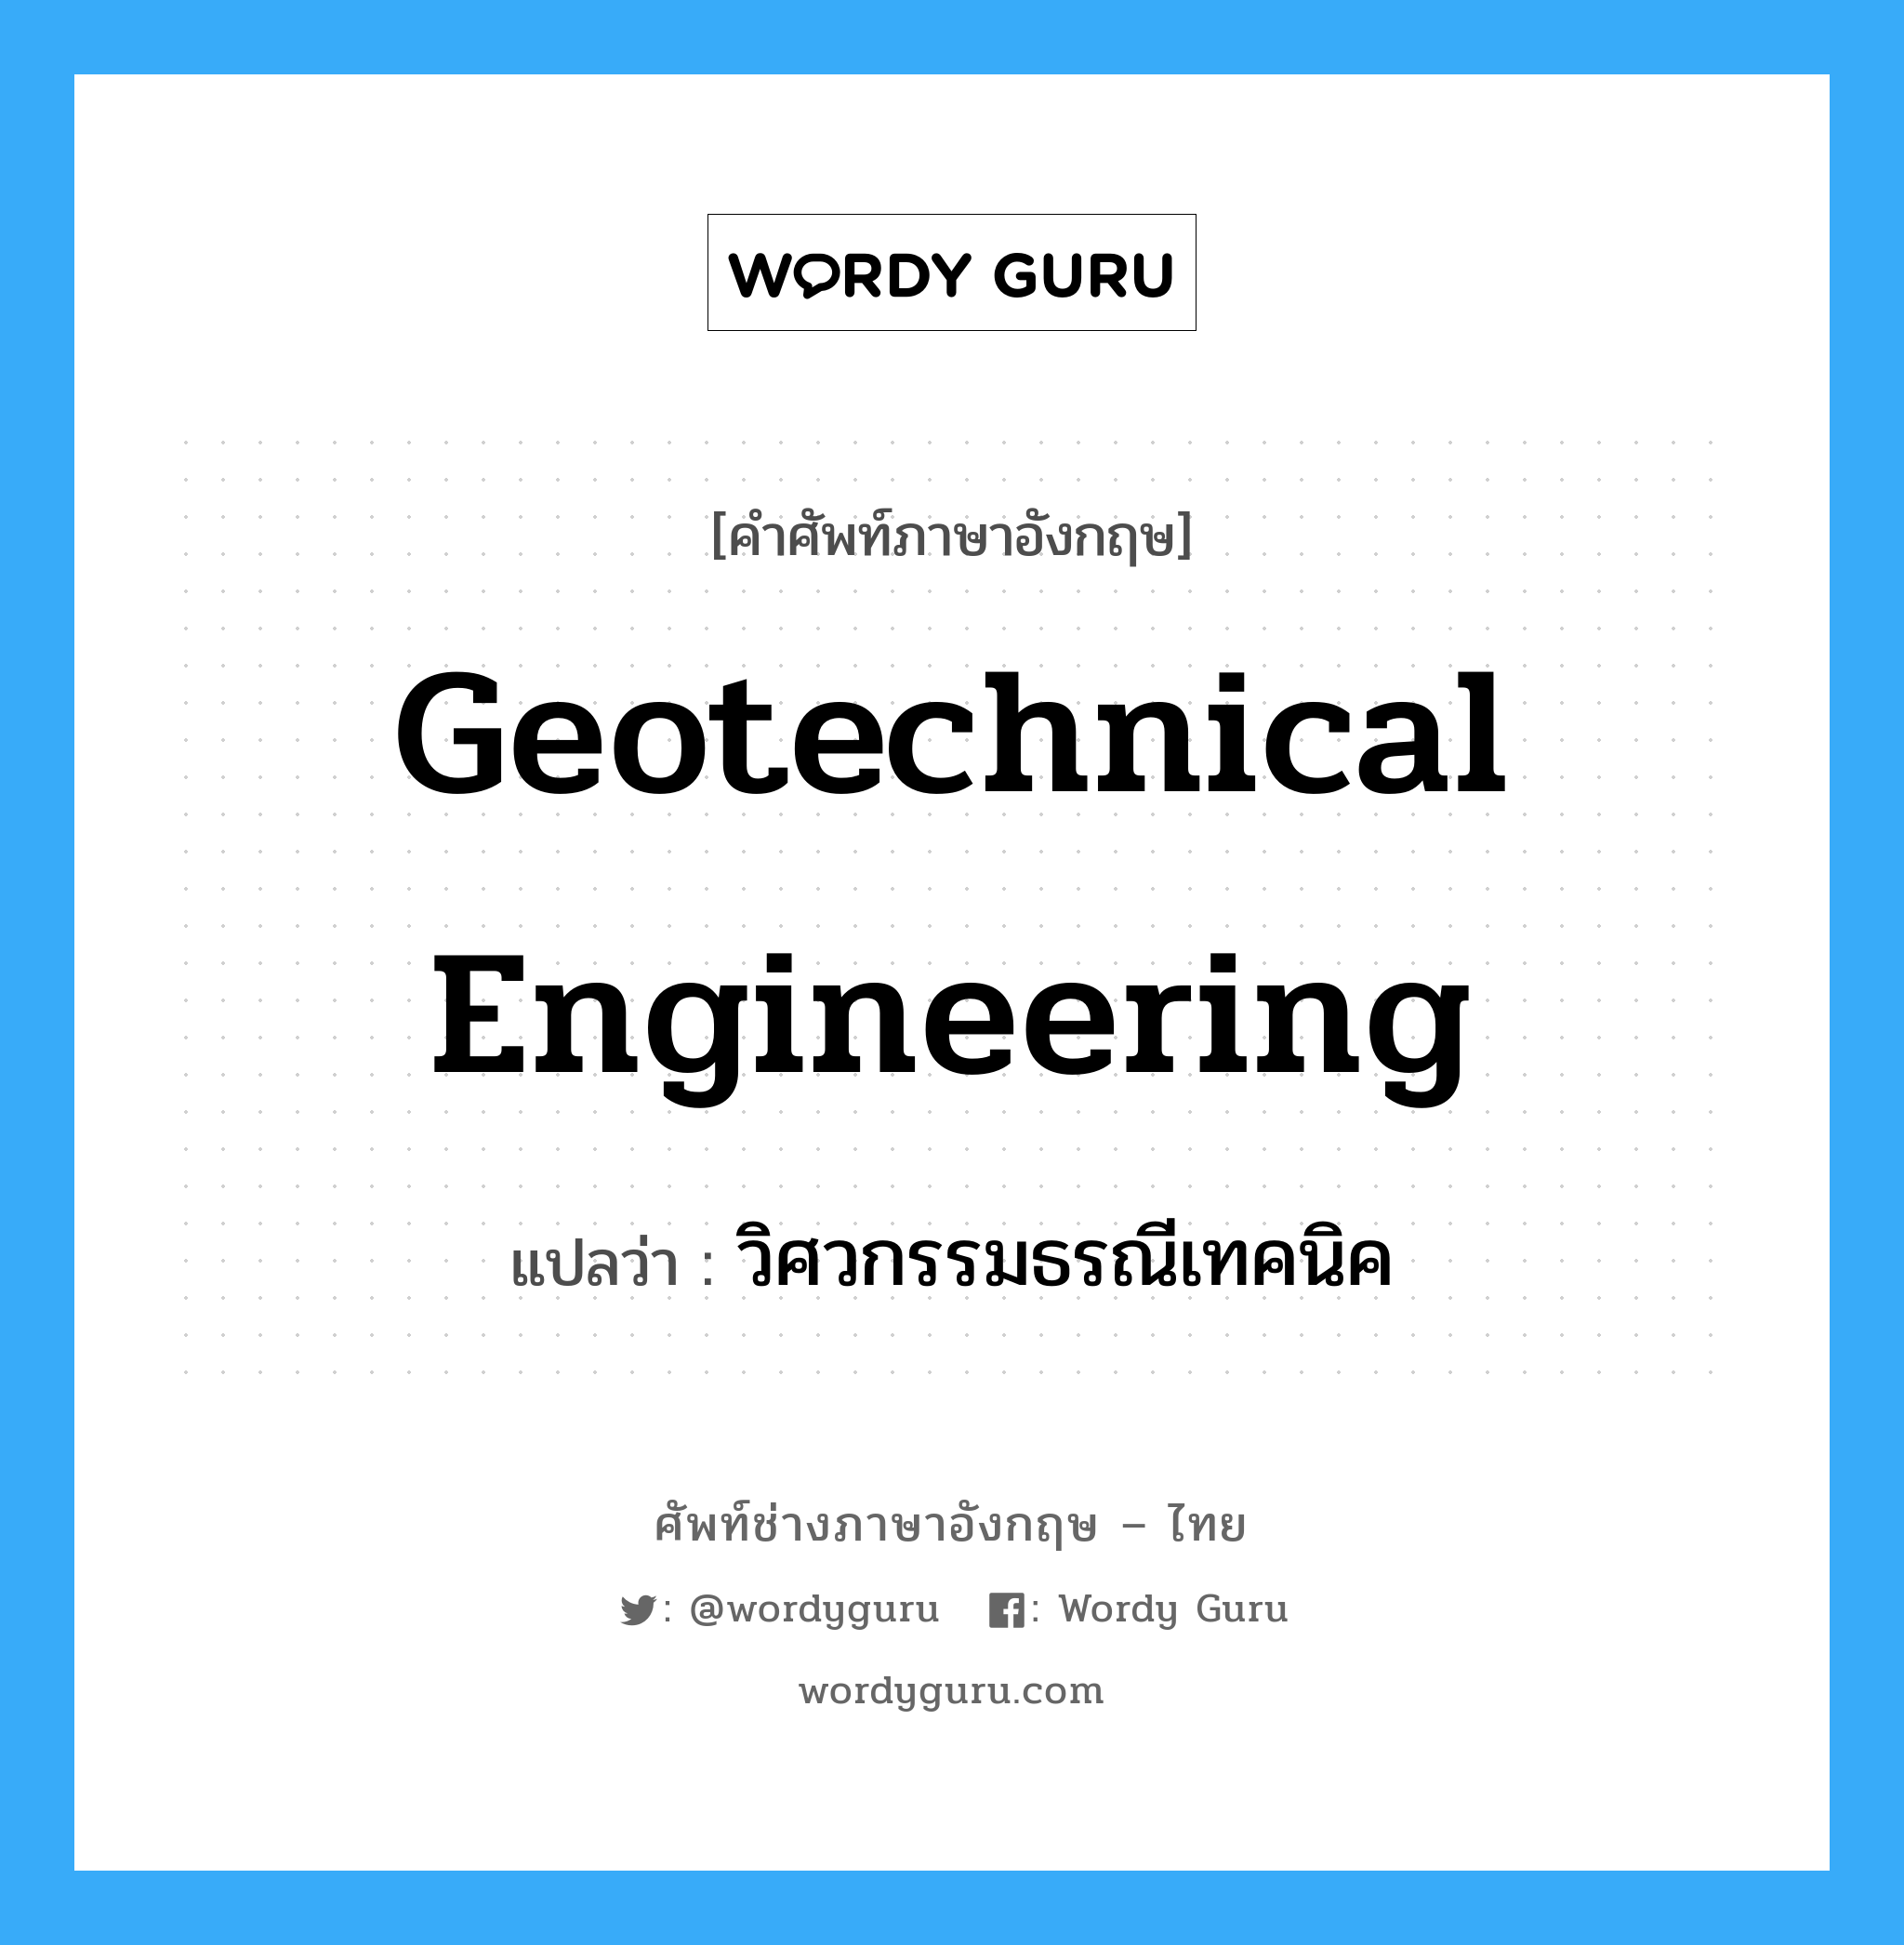 วิศวกรรมธรณีเทคนิค ภาษาอังกฤษ?, คำศัพท์ช่างภาษาอังกฤษ - ไทย วิศวกรรมธรณีเทคนิค คำศัพท์ภาษาอังกฤษ วิศวกรรมธรณีเทคนิค แปลว่า geotechnical engineering